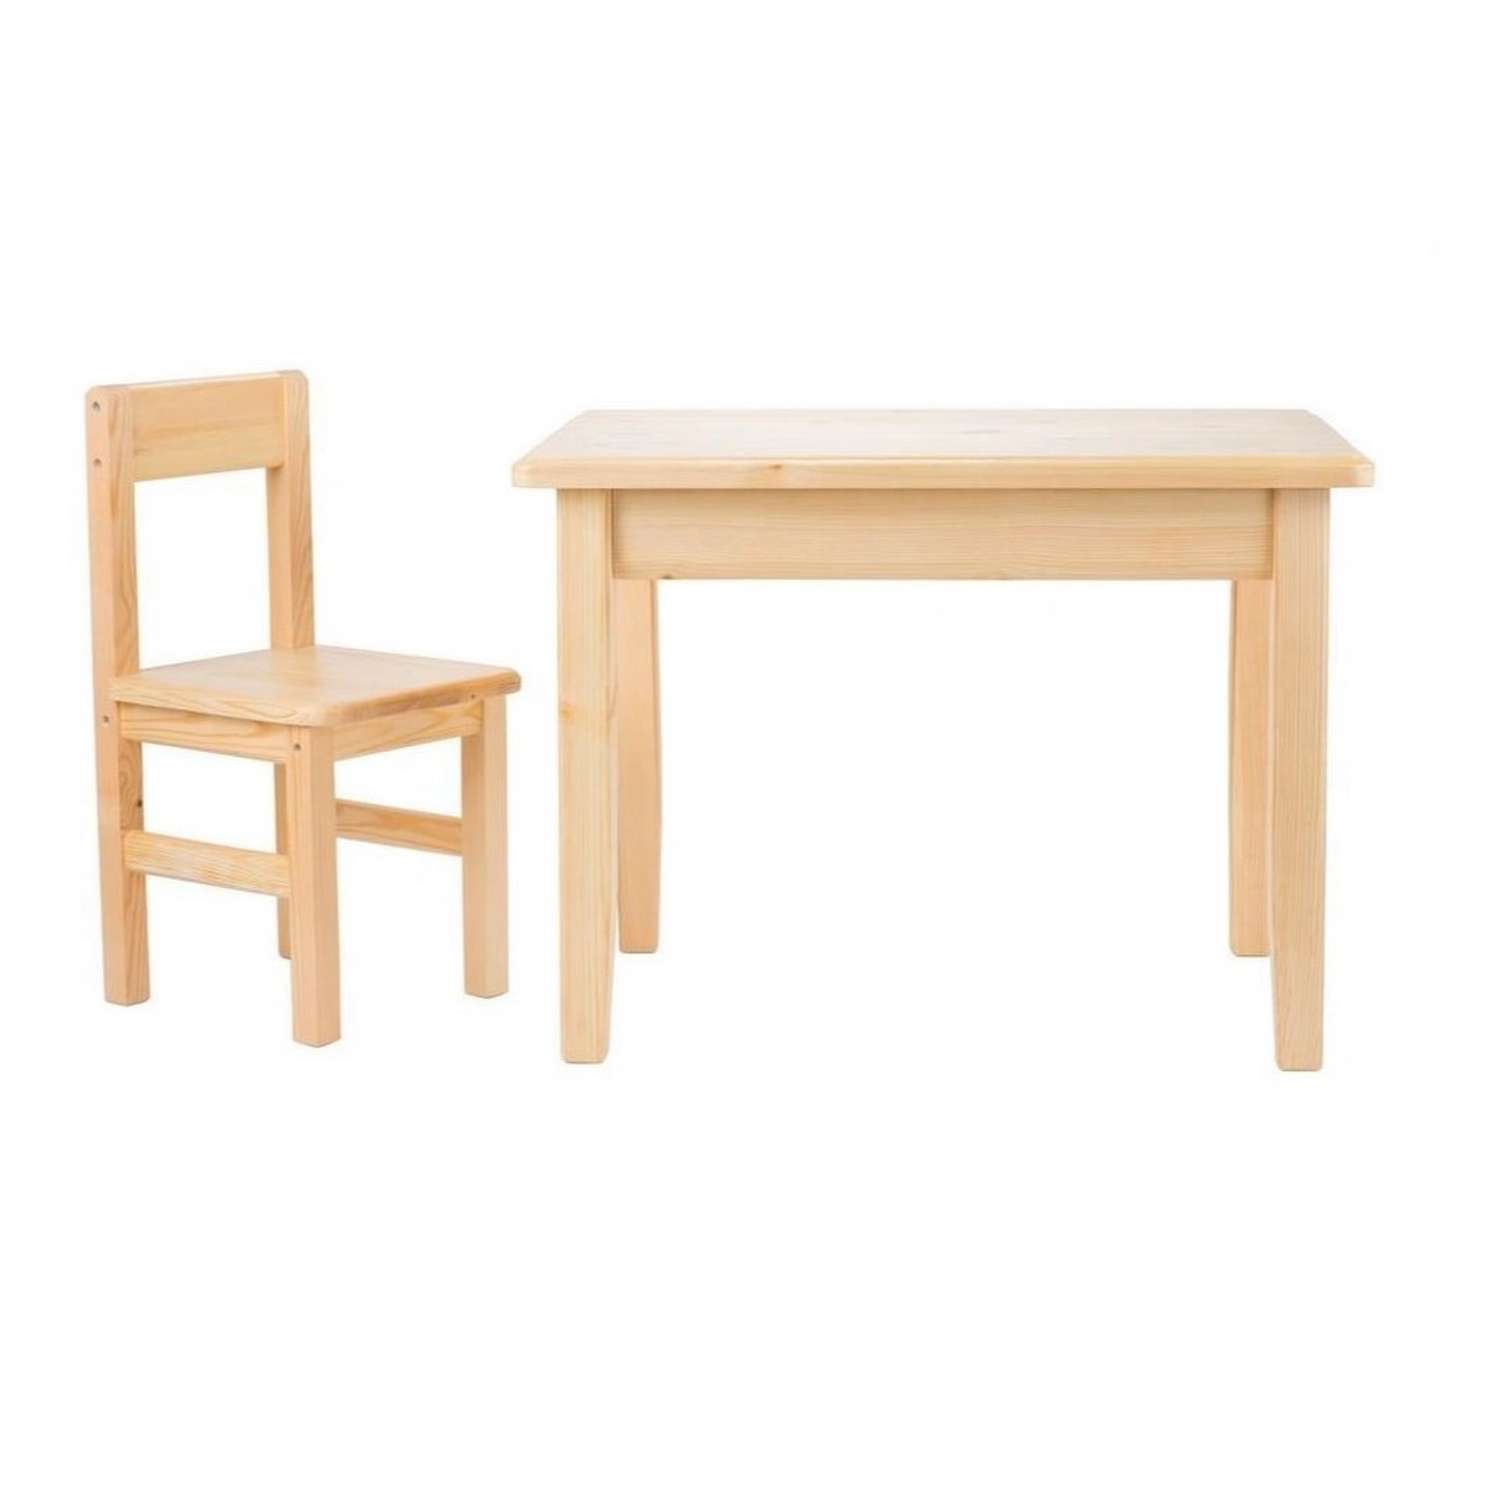 Набор Мебель для дошколят стол со стульчиком для детей от 1 до 3 лет - фото 1